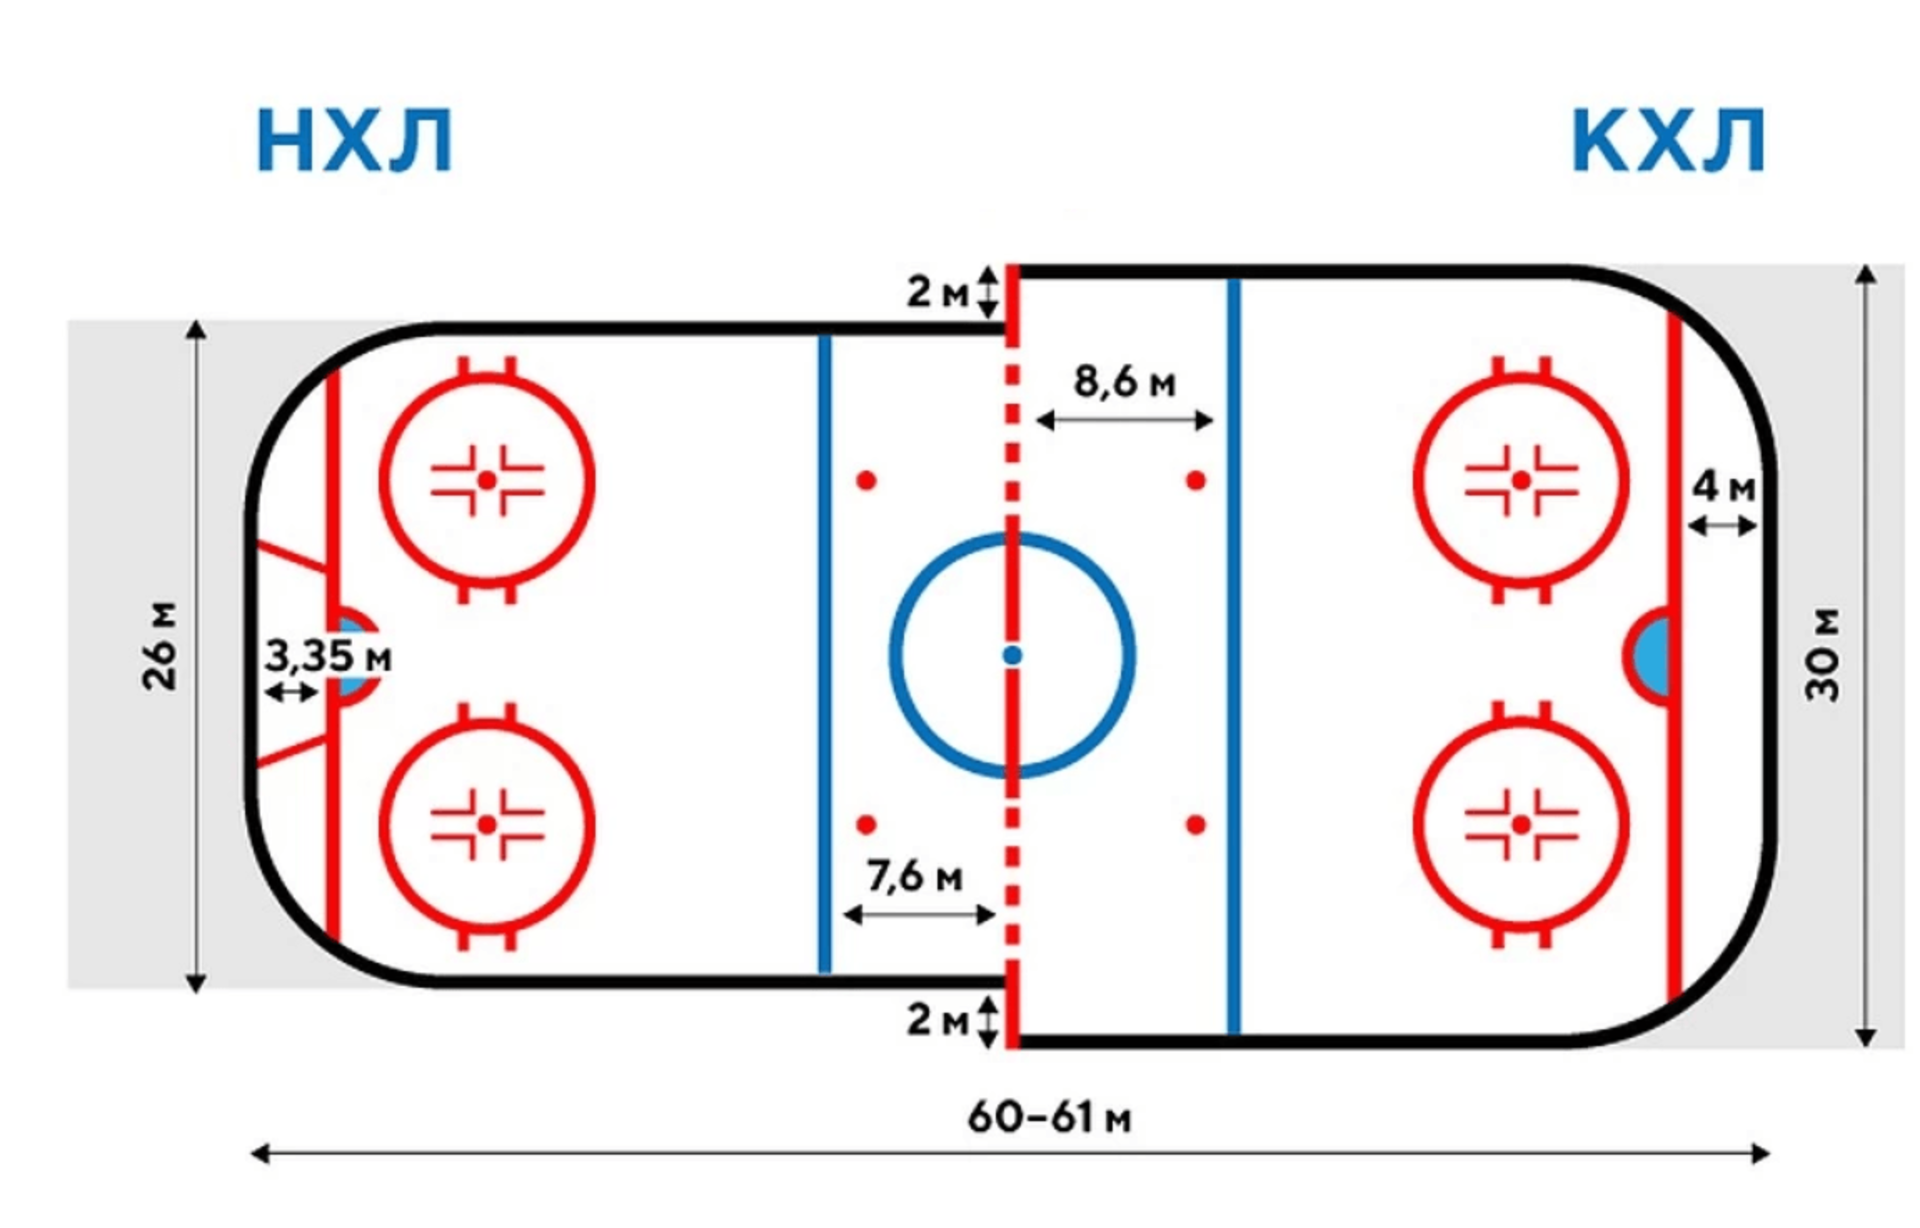 Размер хоккейной площадки в россии. Размеры хоккейной площадки КХЛ И НХЛ. Размер хоккейной площадки в КХЛ. Размер хоккейной площадки в НХЛ. Размер хоккейной площадки в России и в НХЛ.